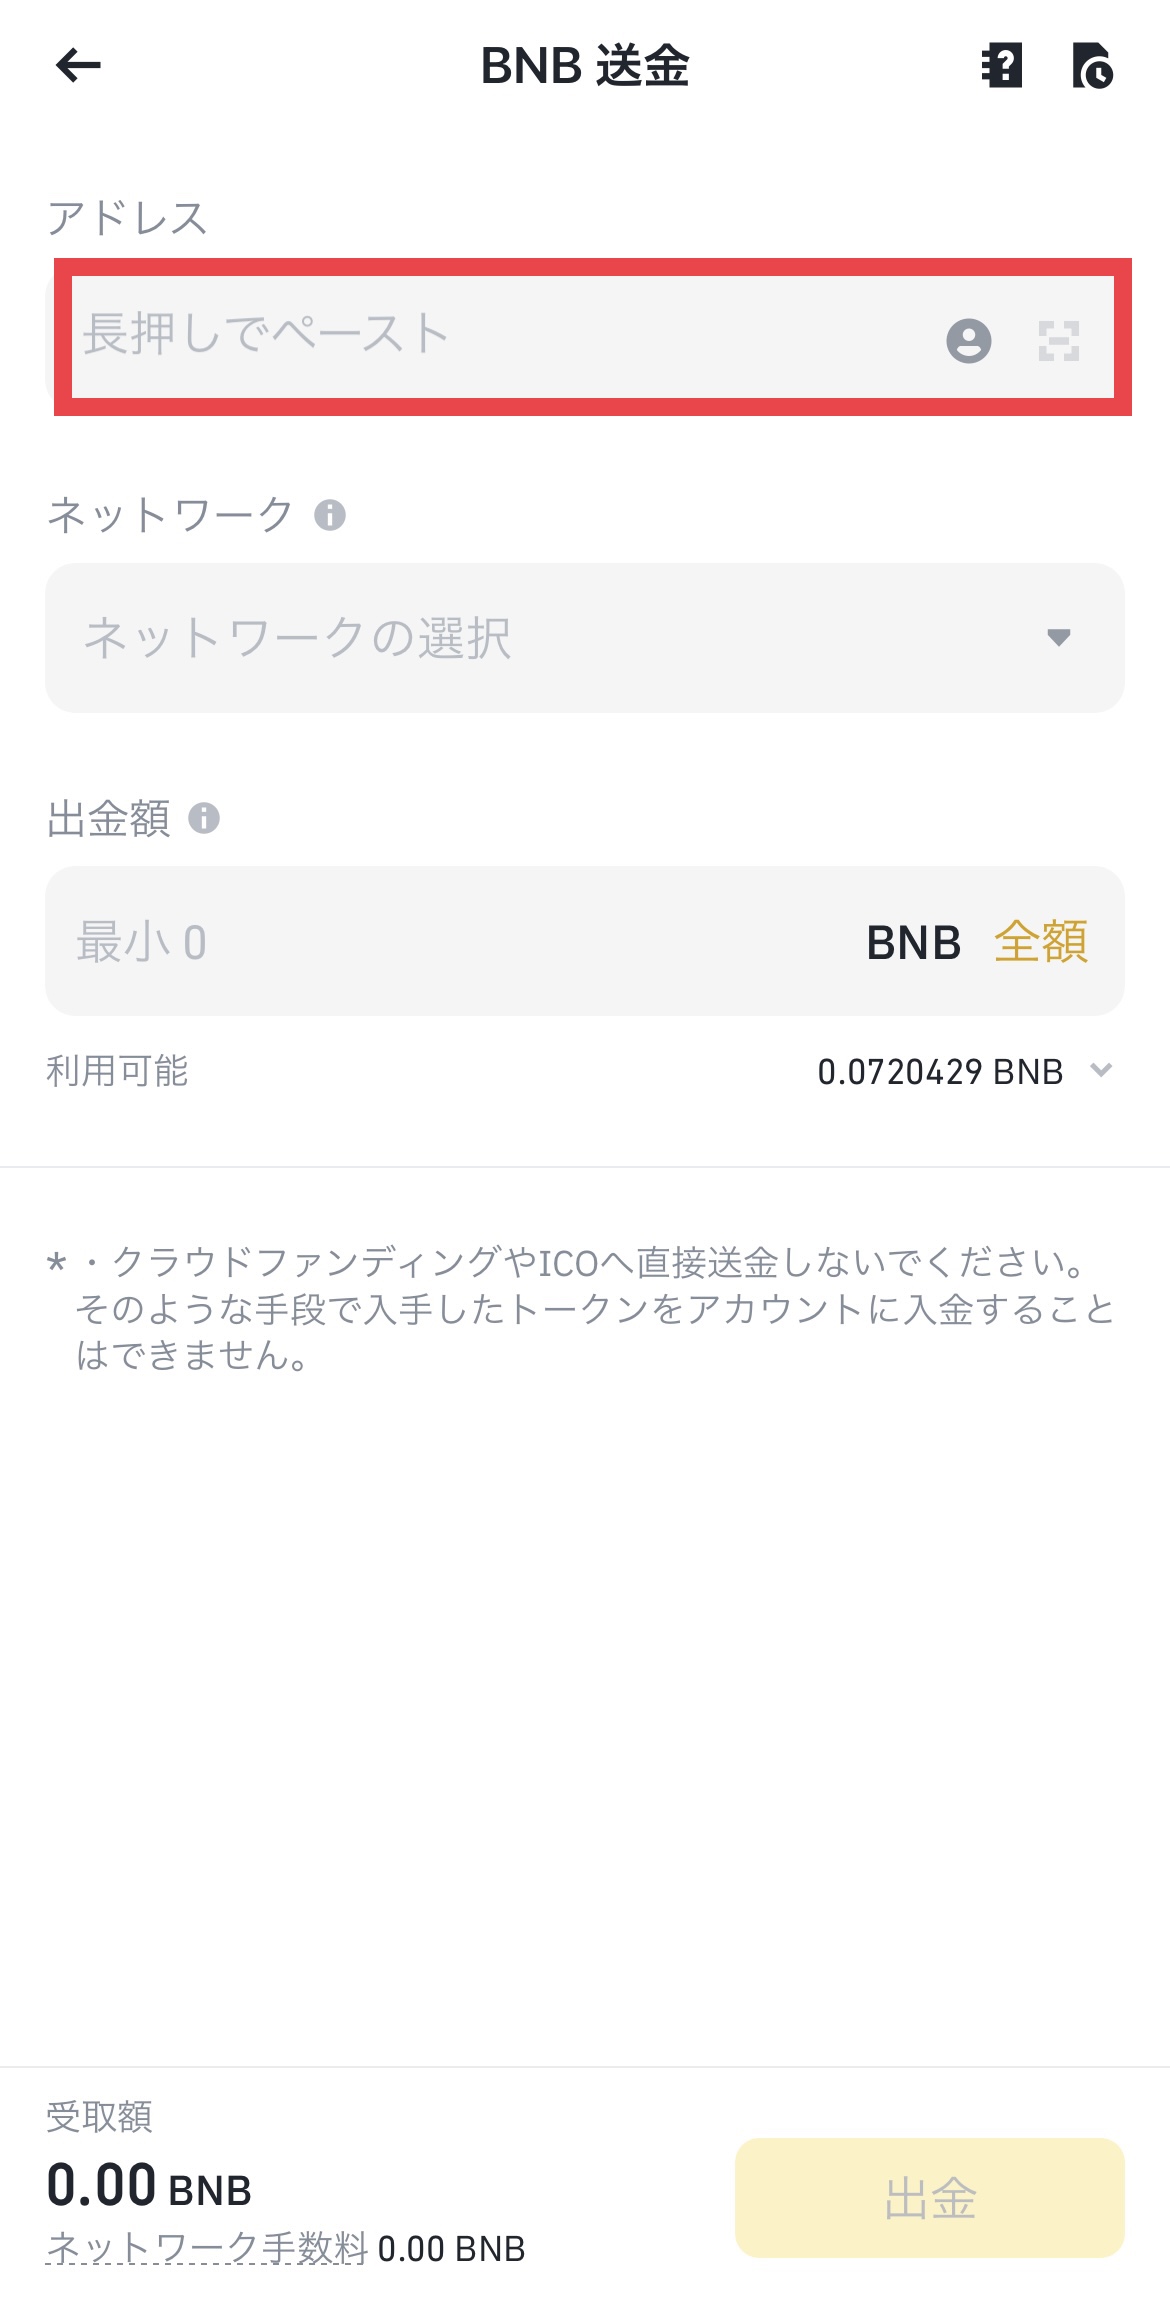 Binance Japan（バイナンスジャパン）からBybit（バイビット）へBNBを送金